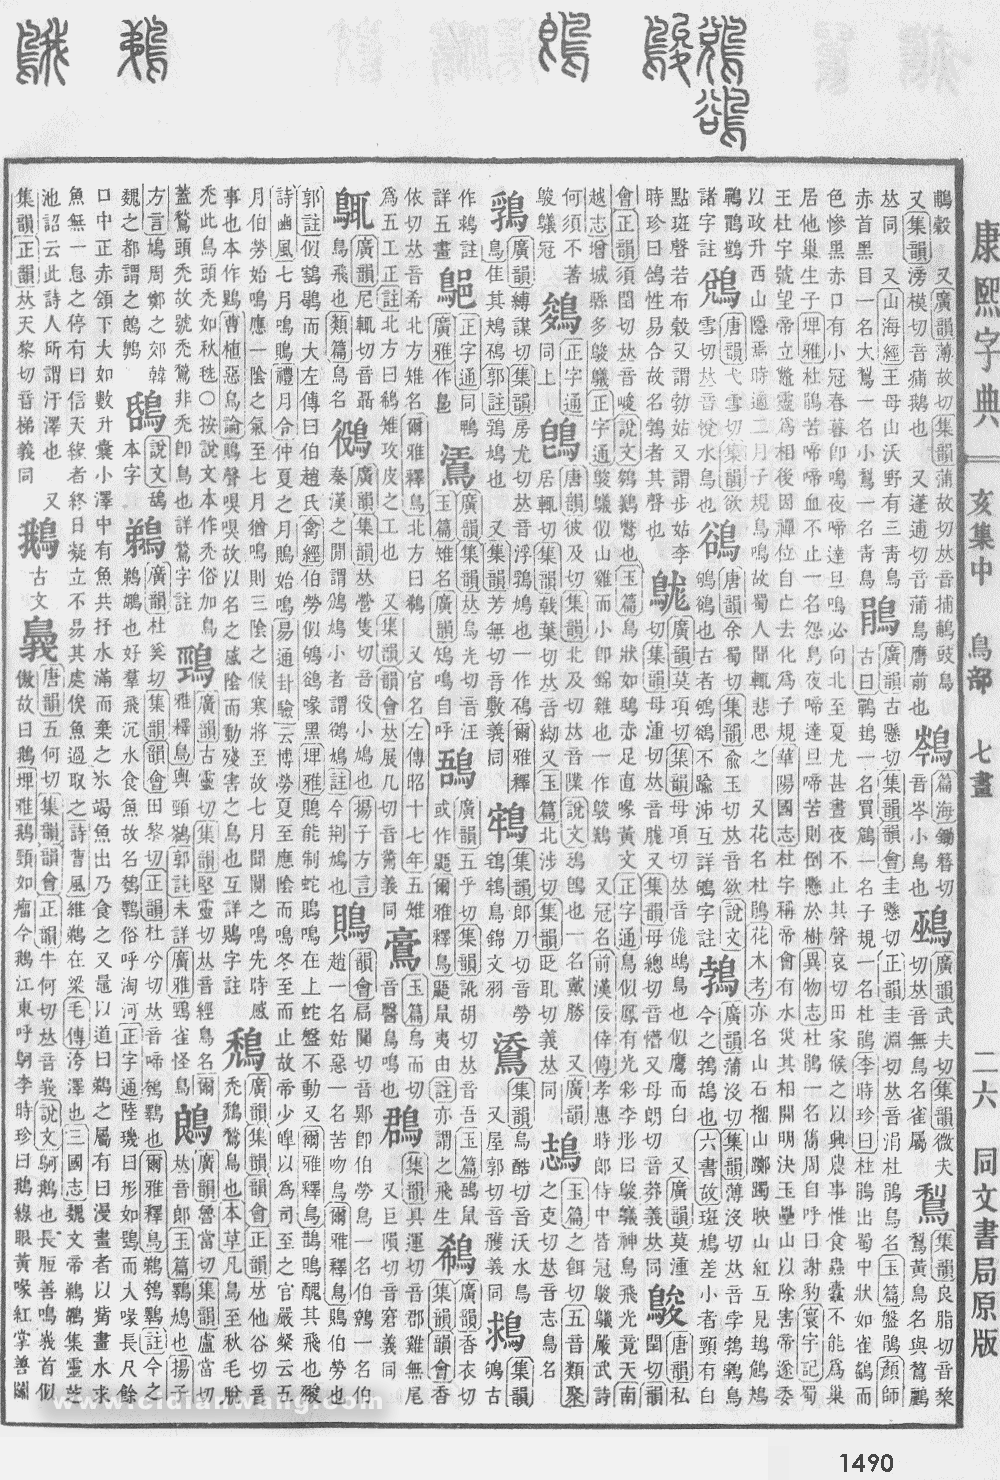 康熙字典掃描版第1490頁